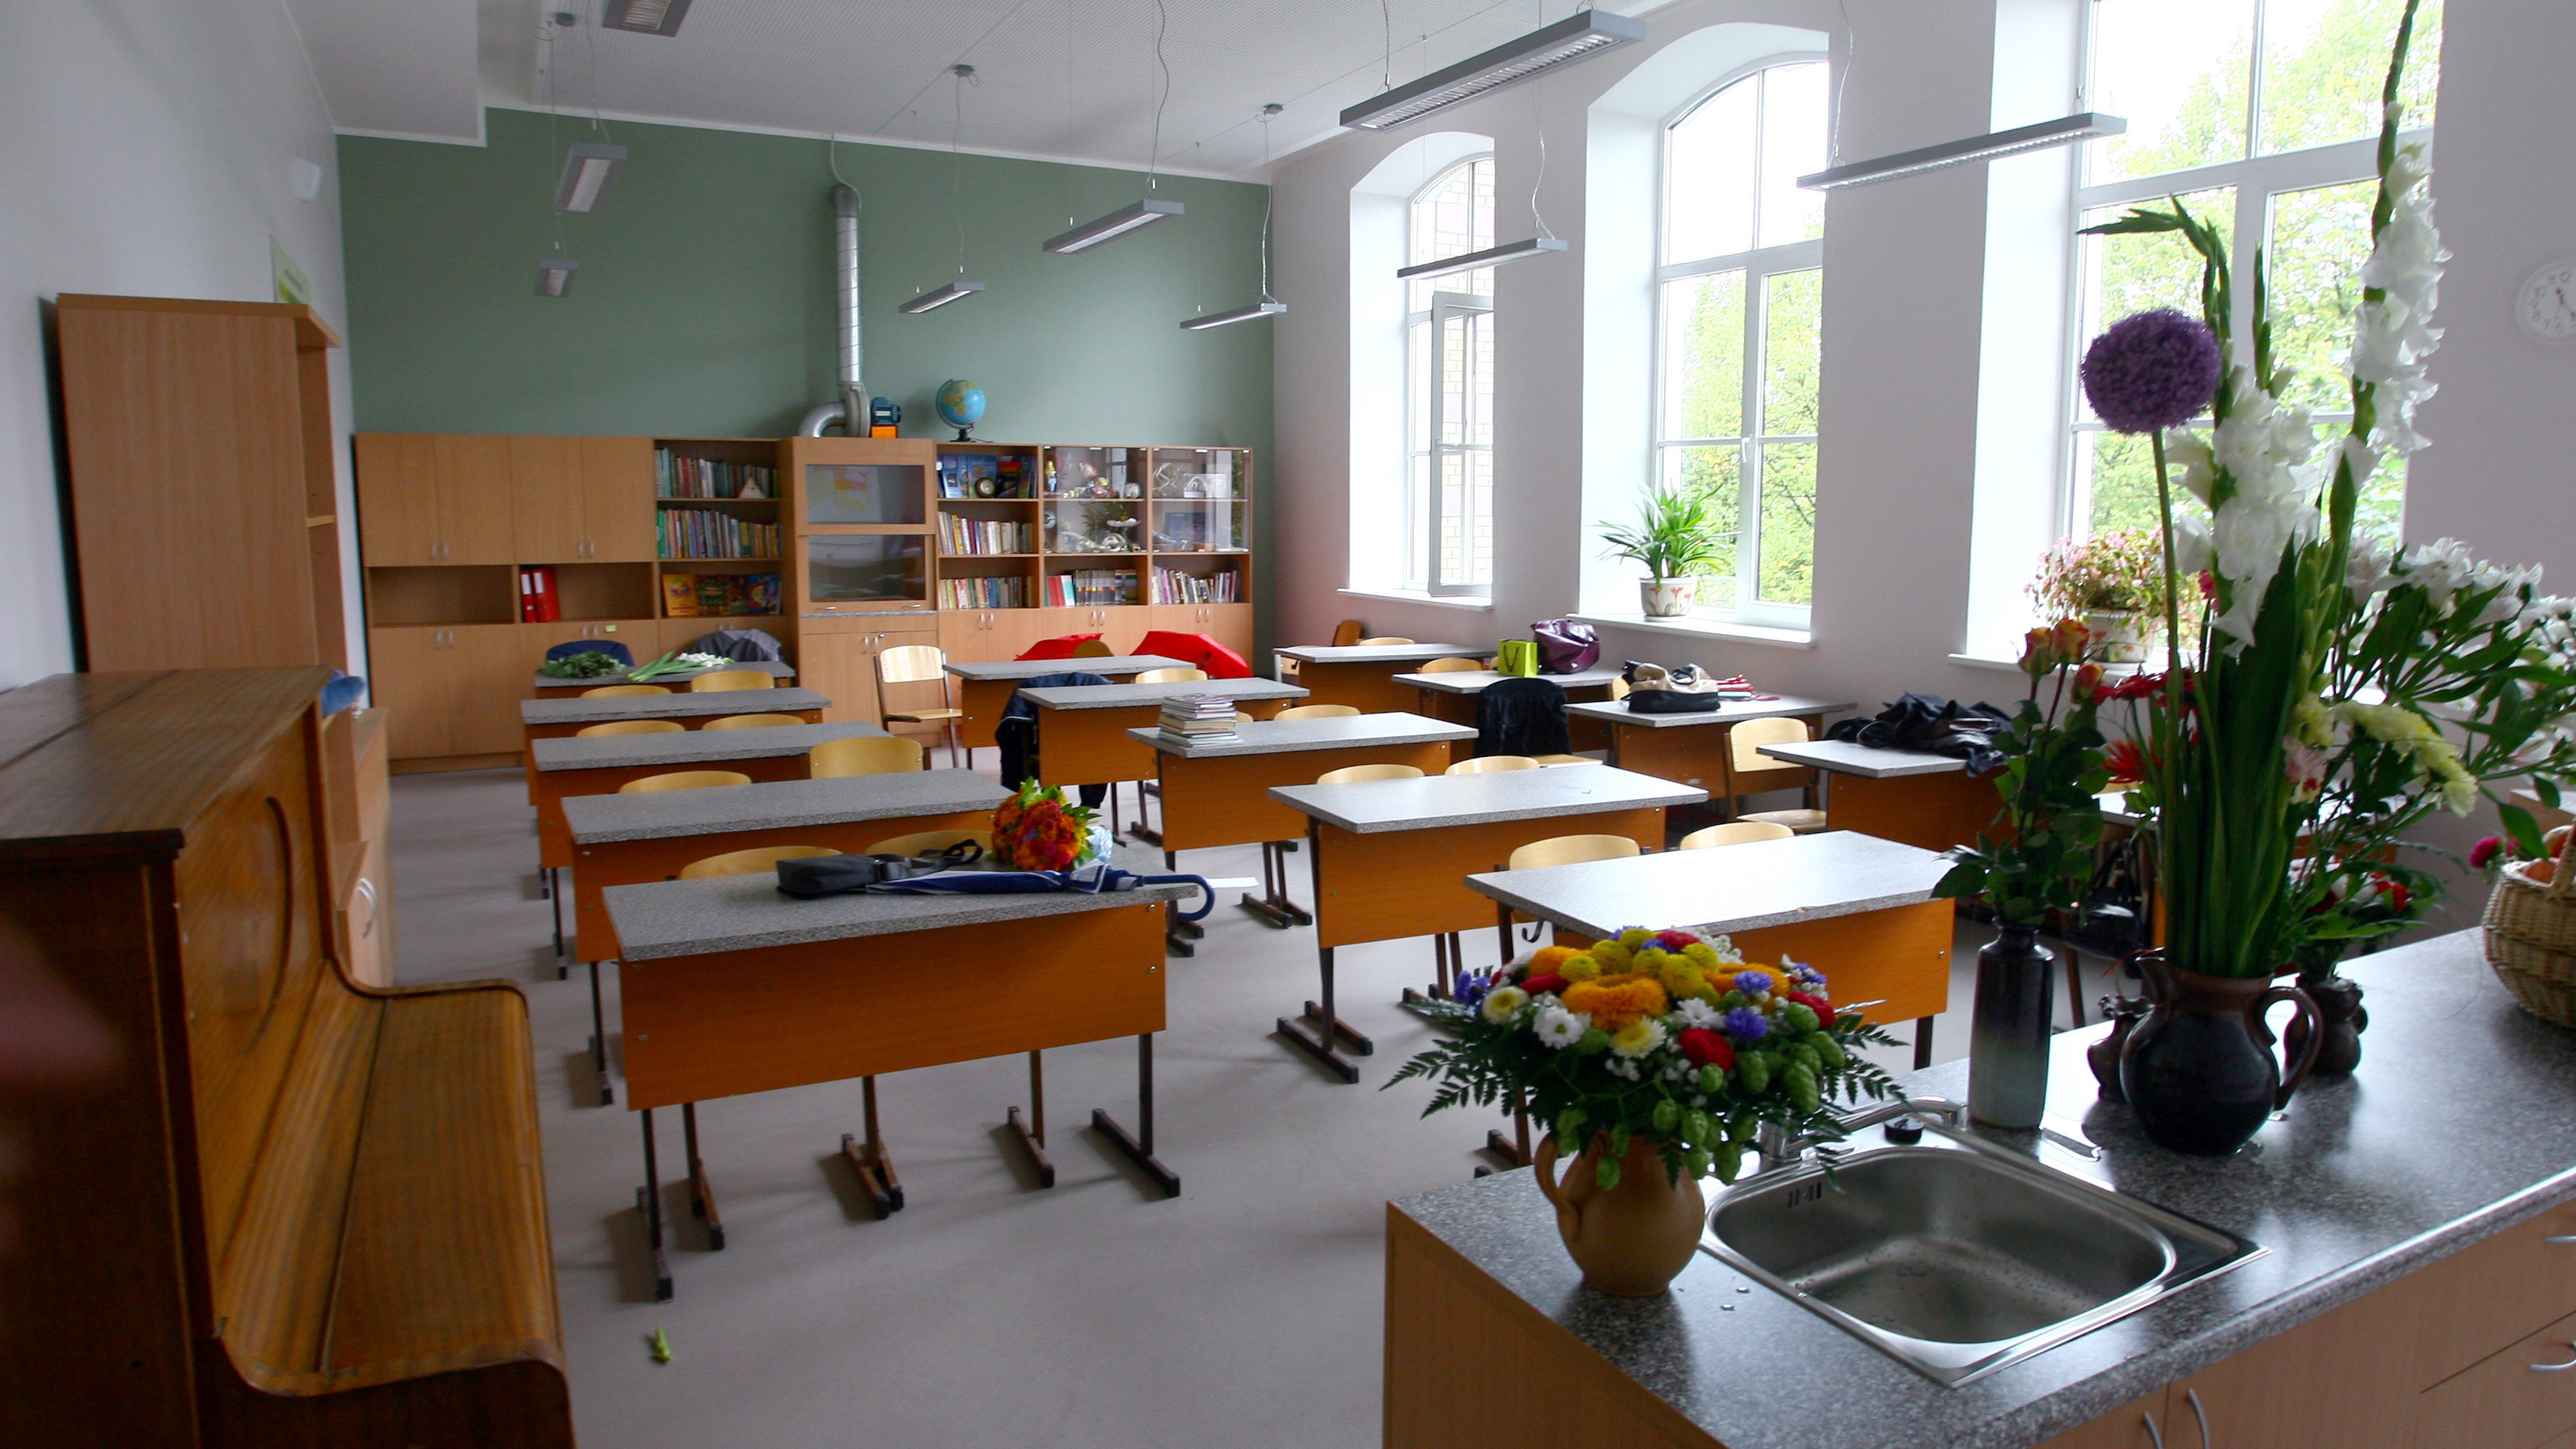  Rīgas Sociālajā dienestā var pieteikties pabalstam izglītības ieguvei 